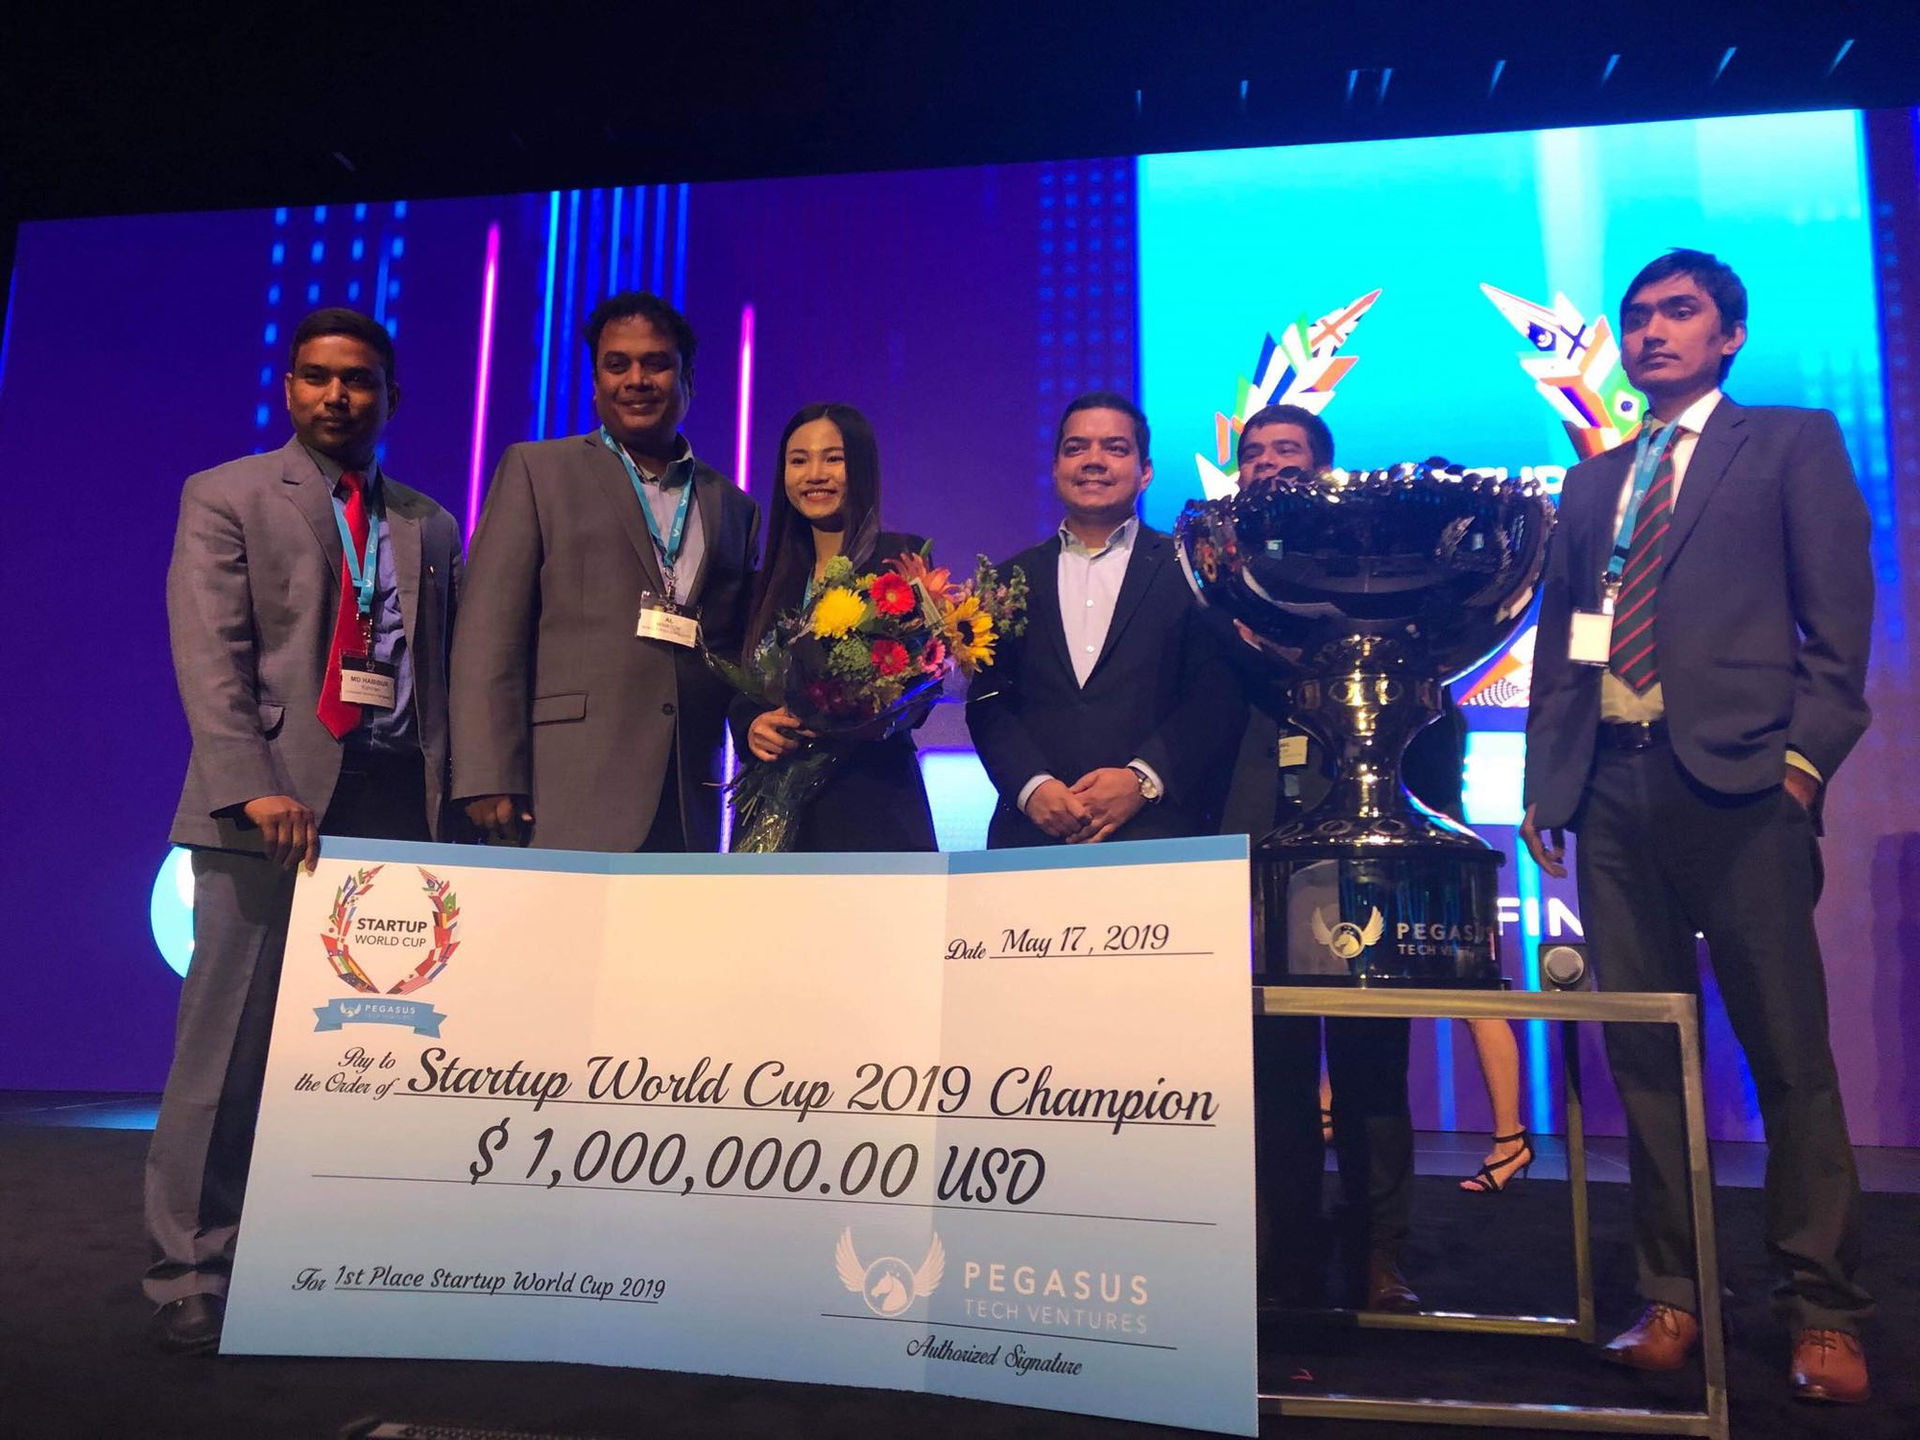 Abivin chiến thắng giải thưởng 1 triệu USD tại Startup World Cup. Ảnh: Techfest Vietnam